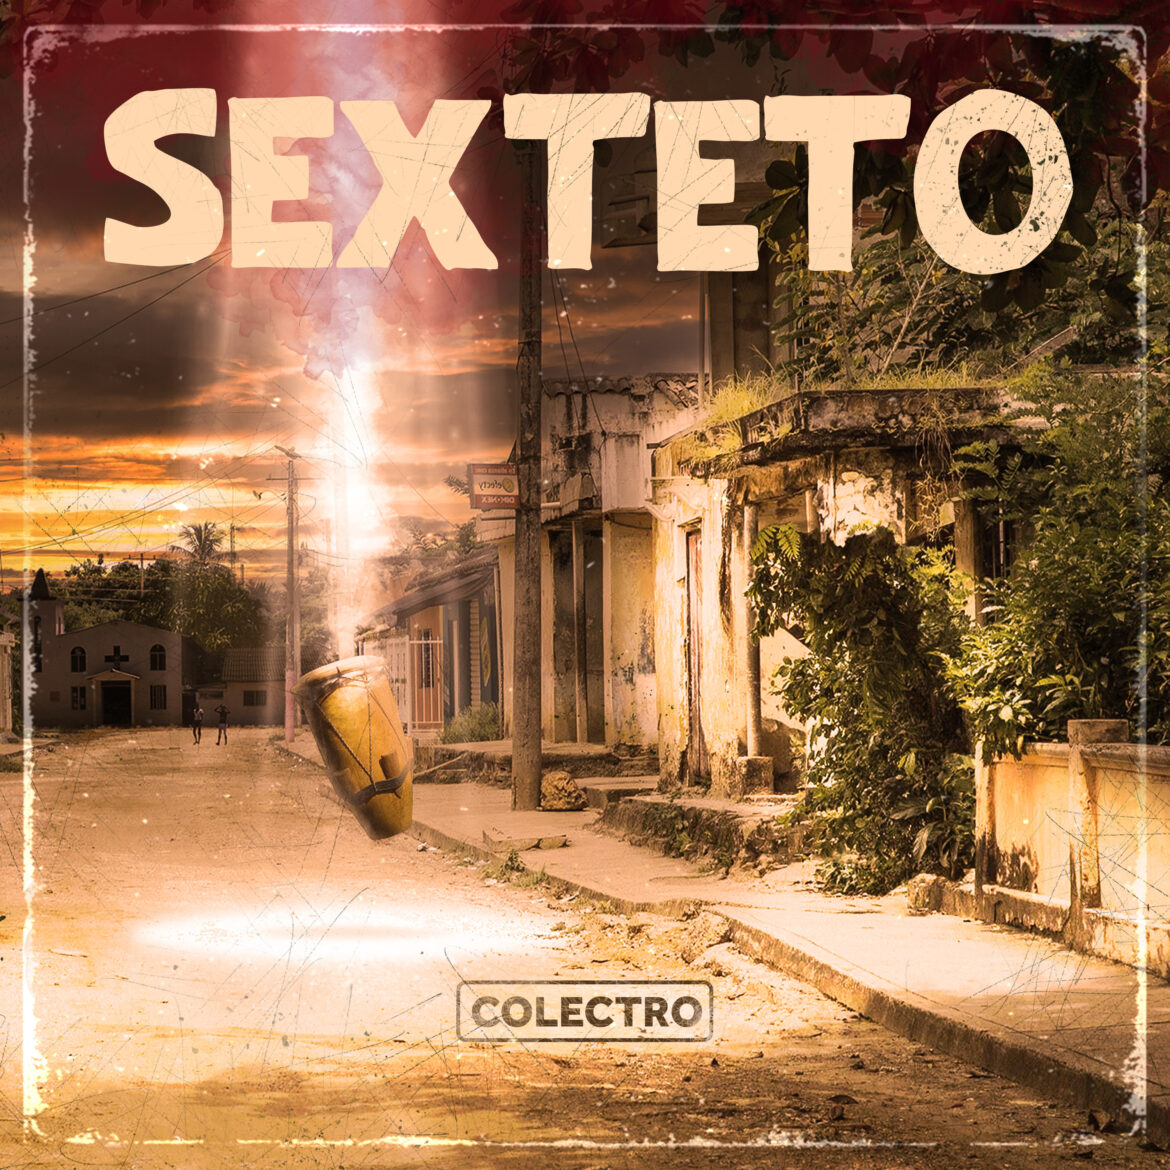 Colectro muestra su faceta más romántica con “Sexteto”